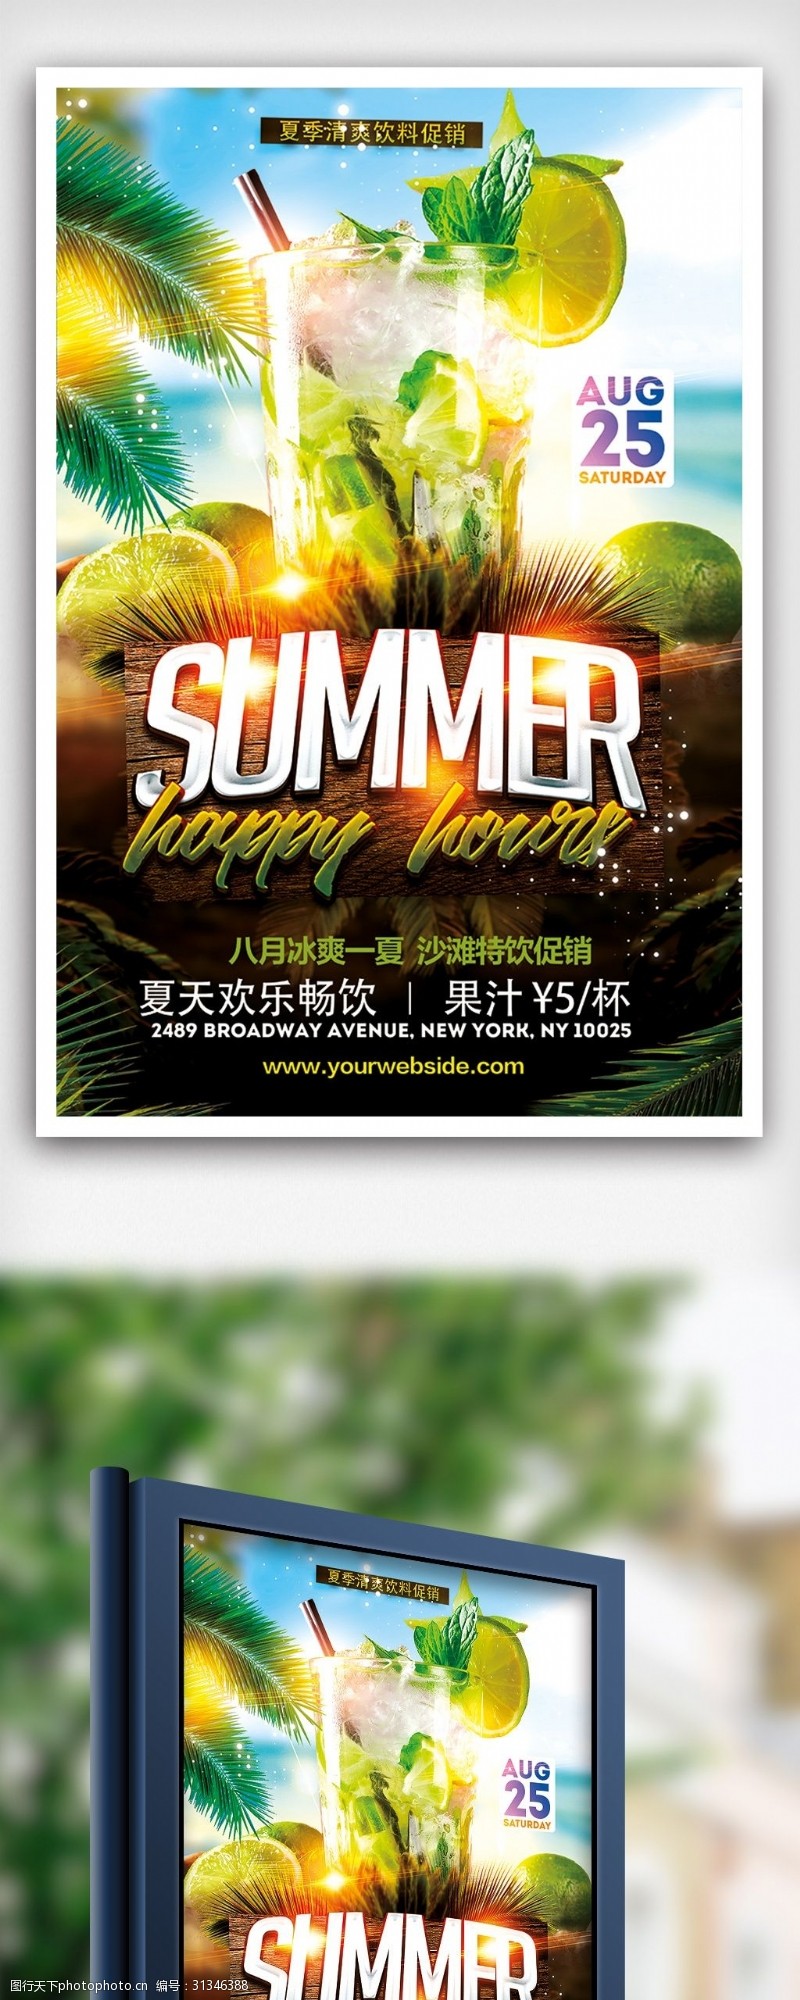 饮料图片免费下载夏季清爽饮料特价促销海报设计